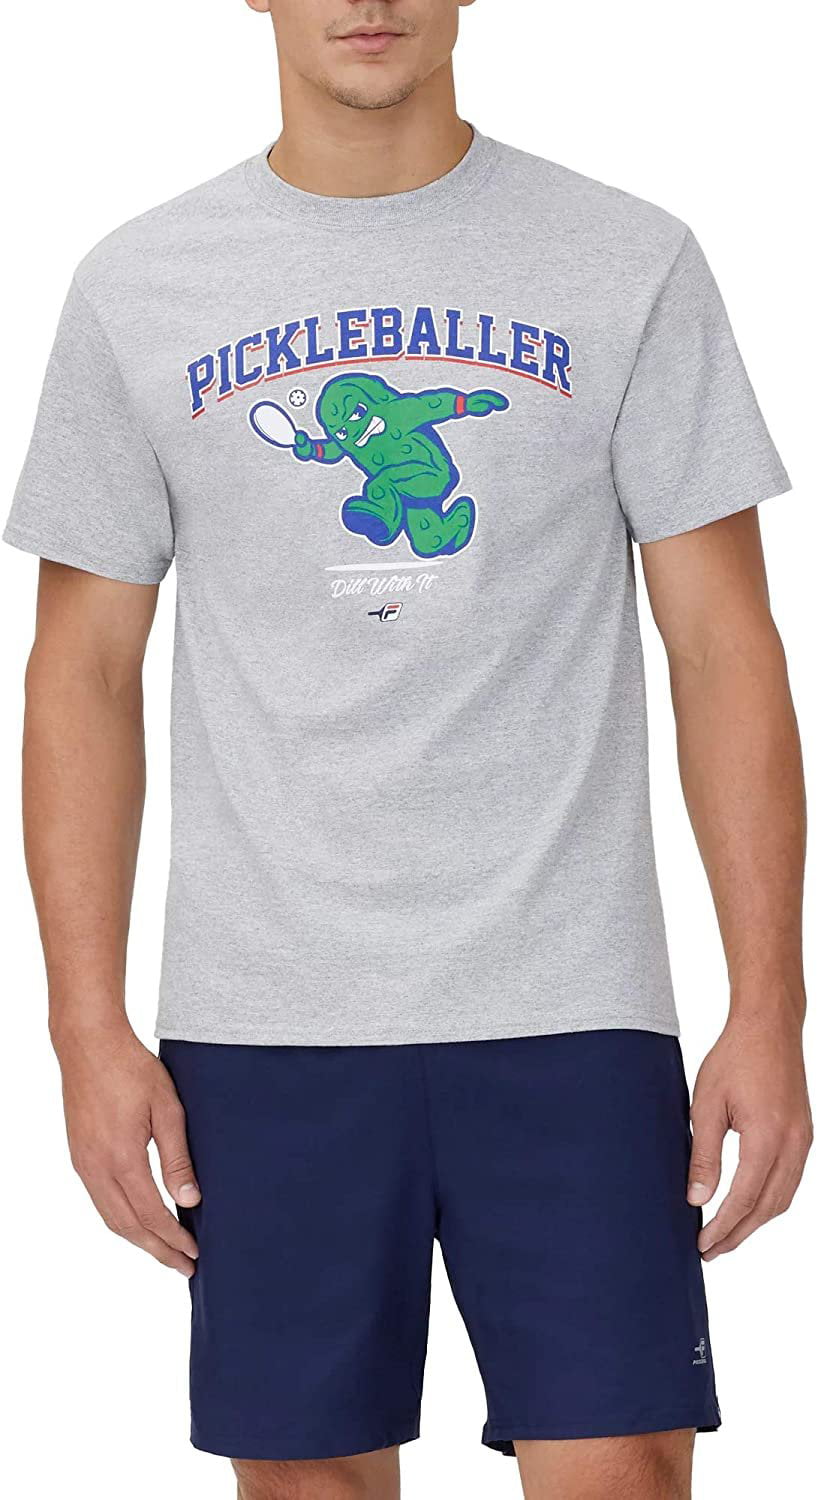 Pickleball Paddles Well Shirt Tee Shirt Mens Shirt 